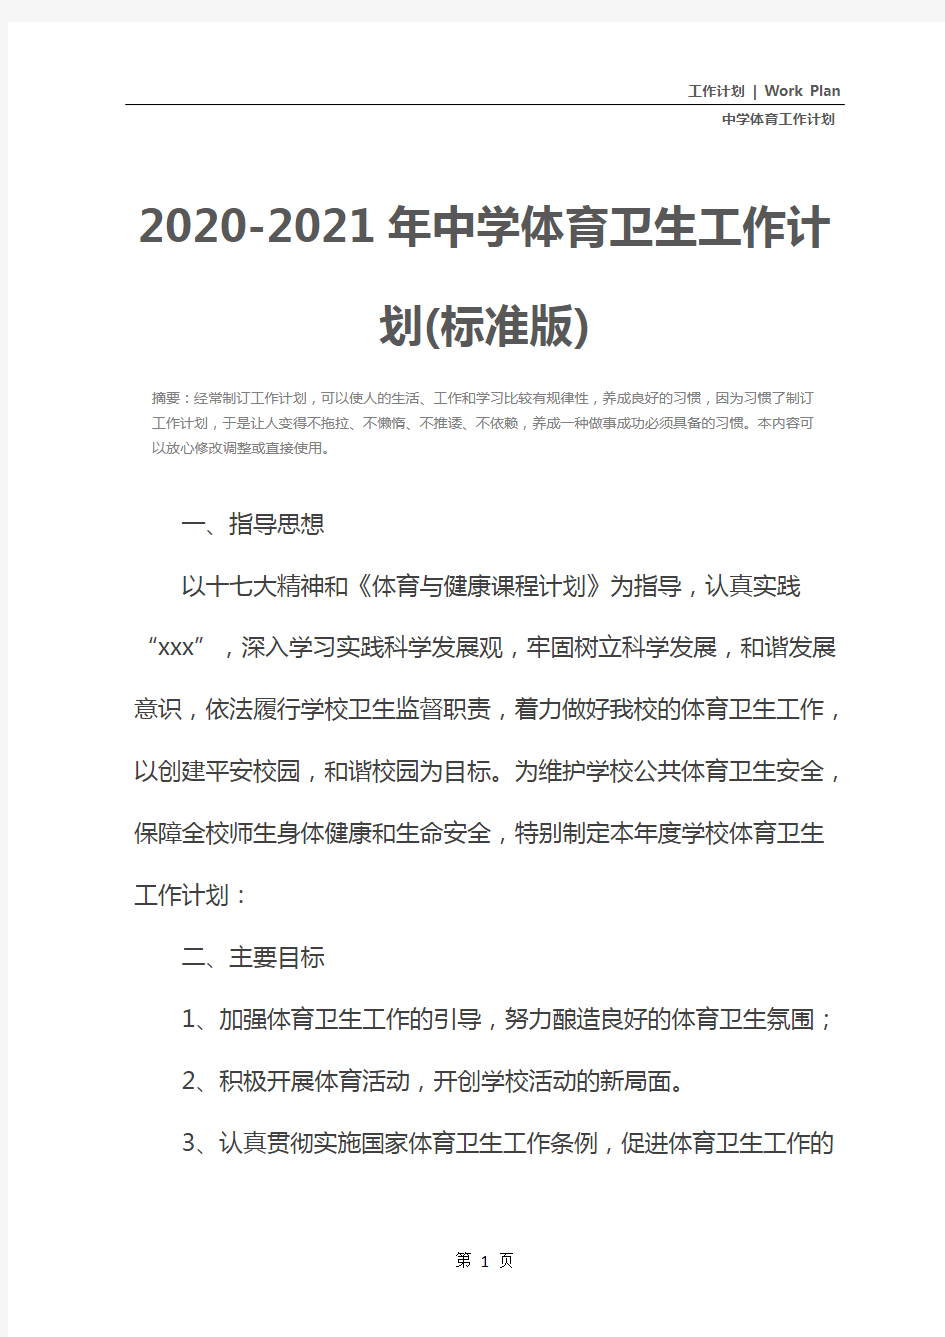 2020-2021年中学体育卫生工作计划(标准版)